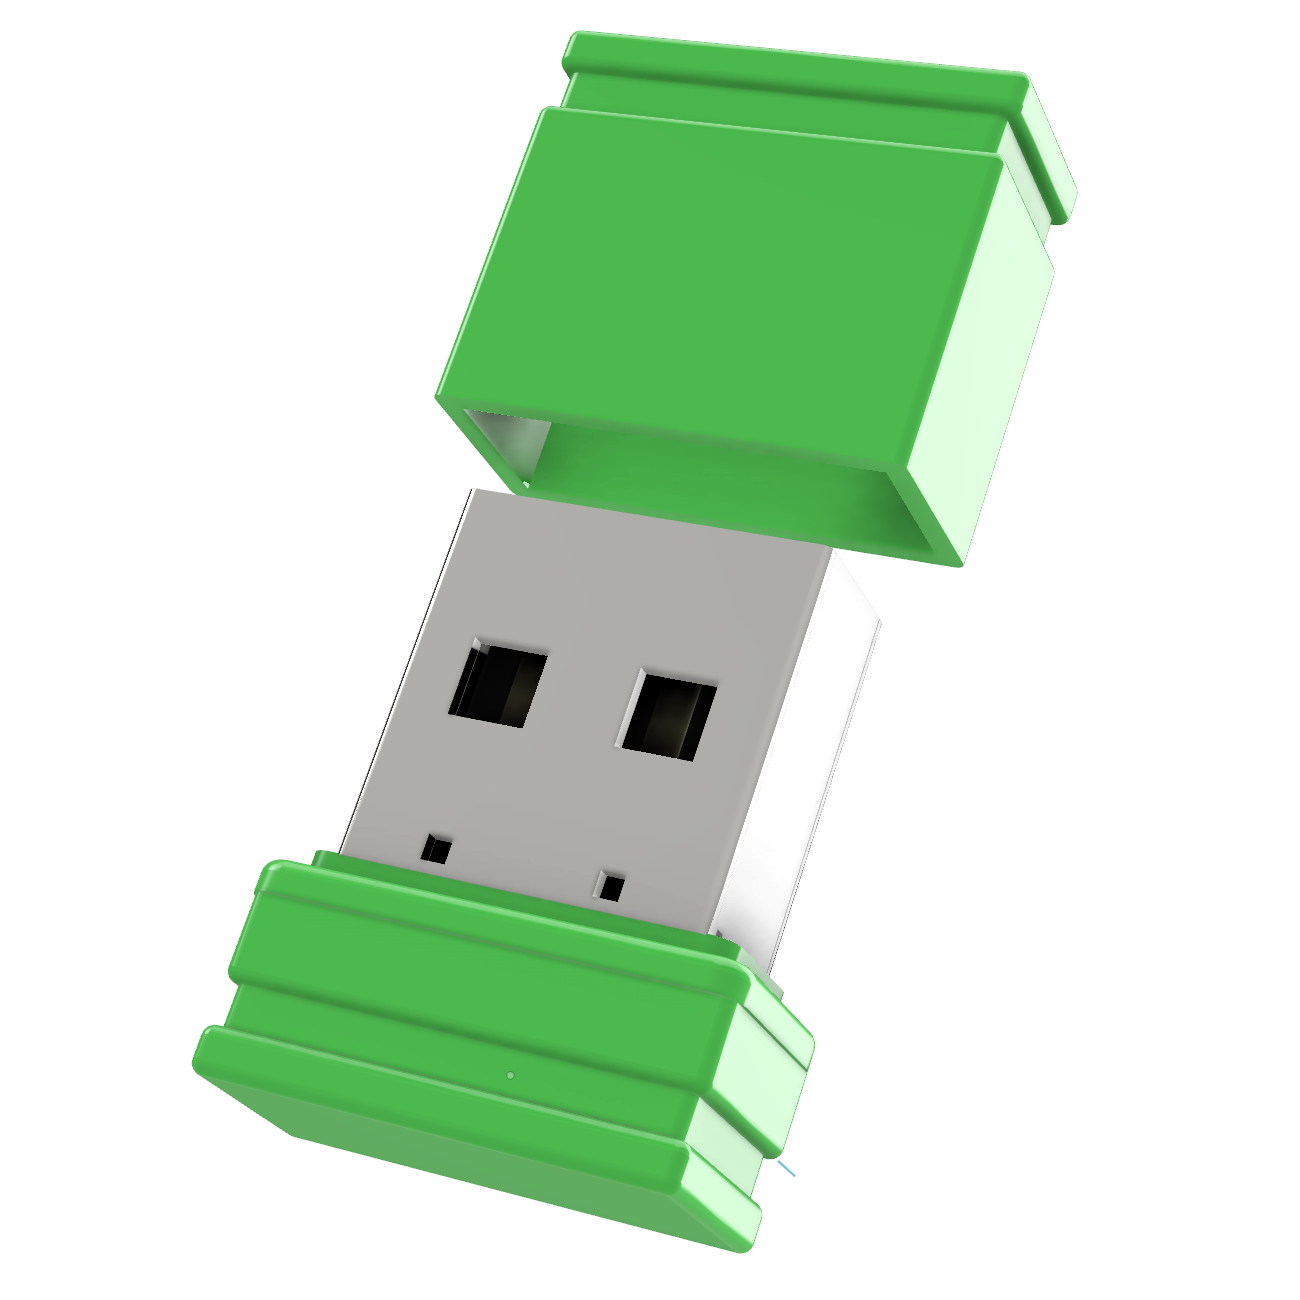 USB GERMANY (Grün, Mini ®ULTRA P1 GB) USB-Stick 4